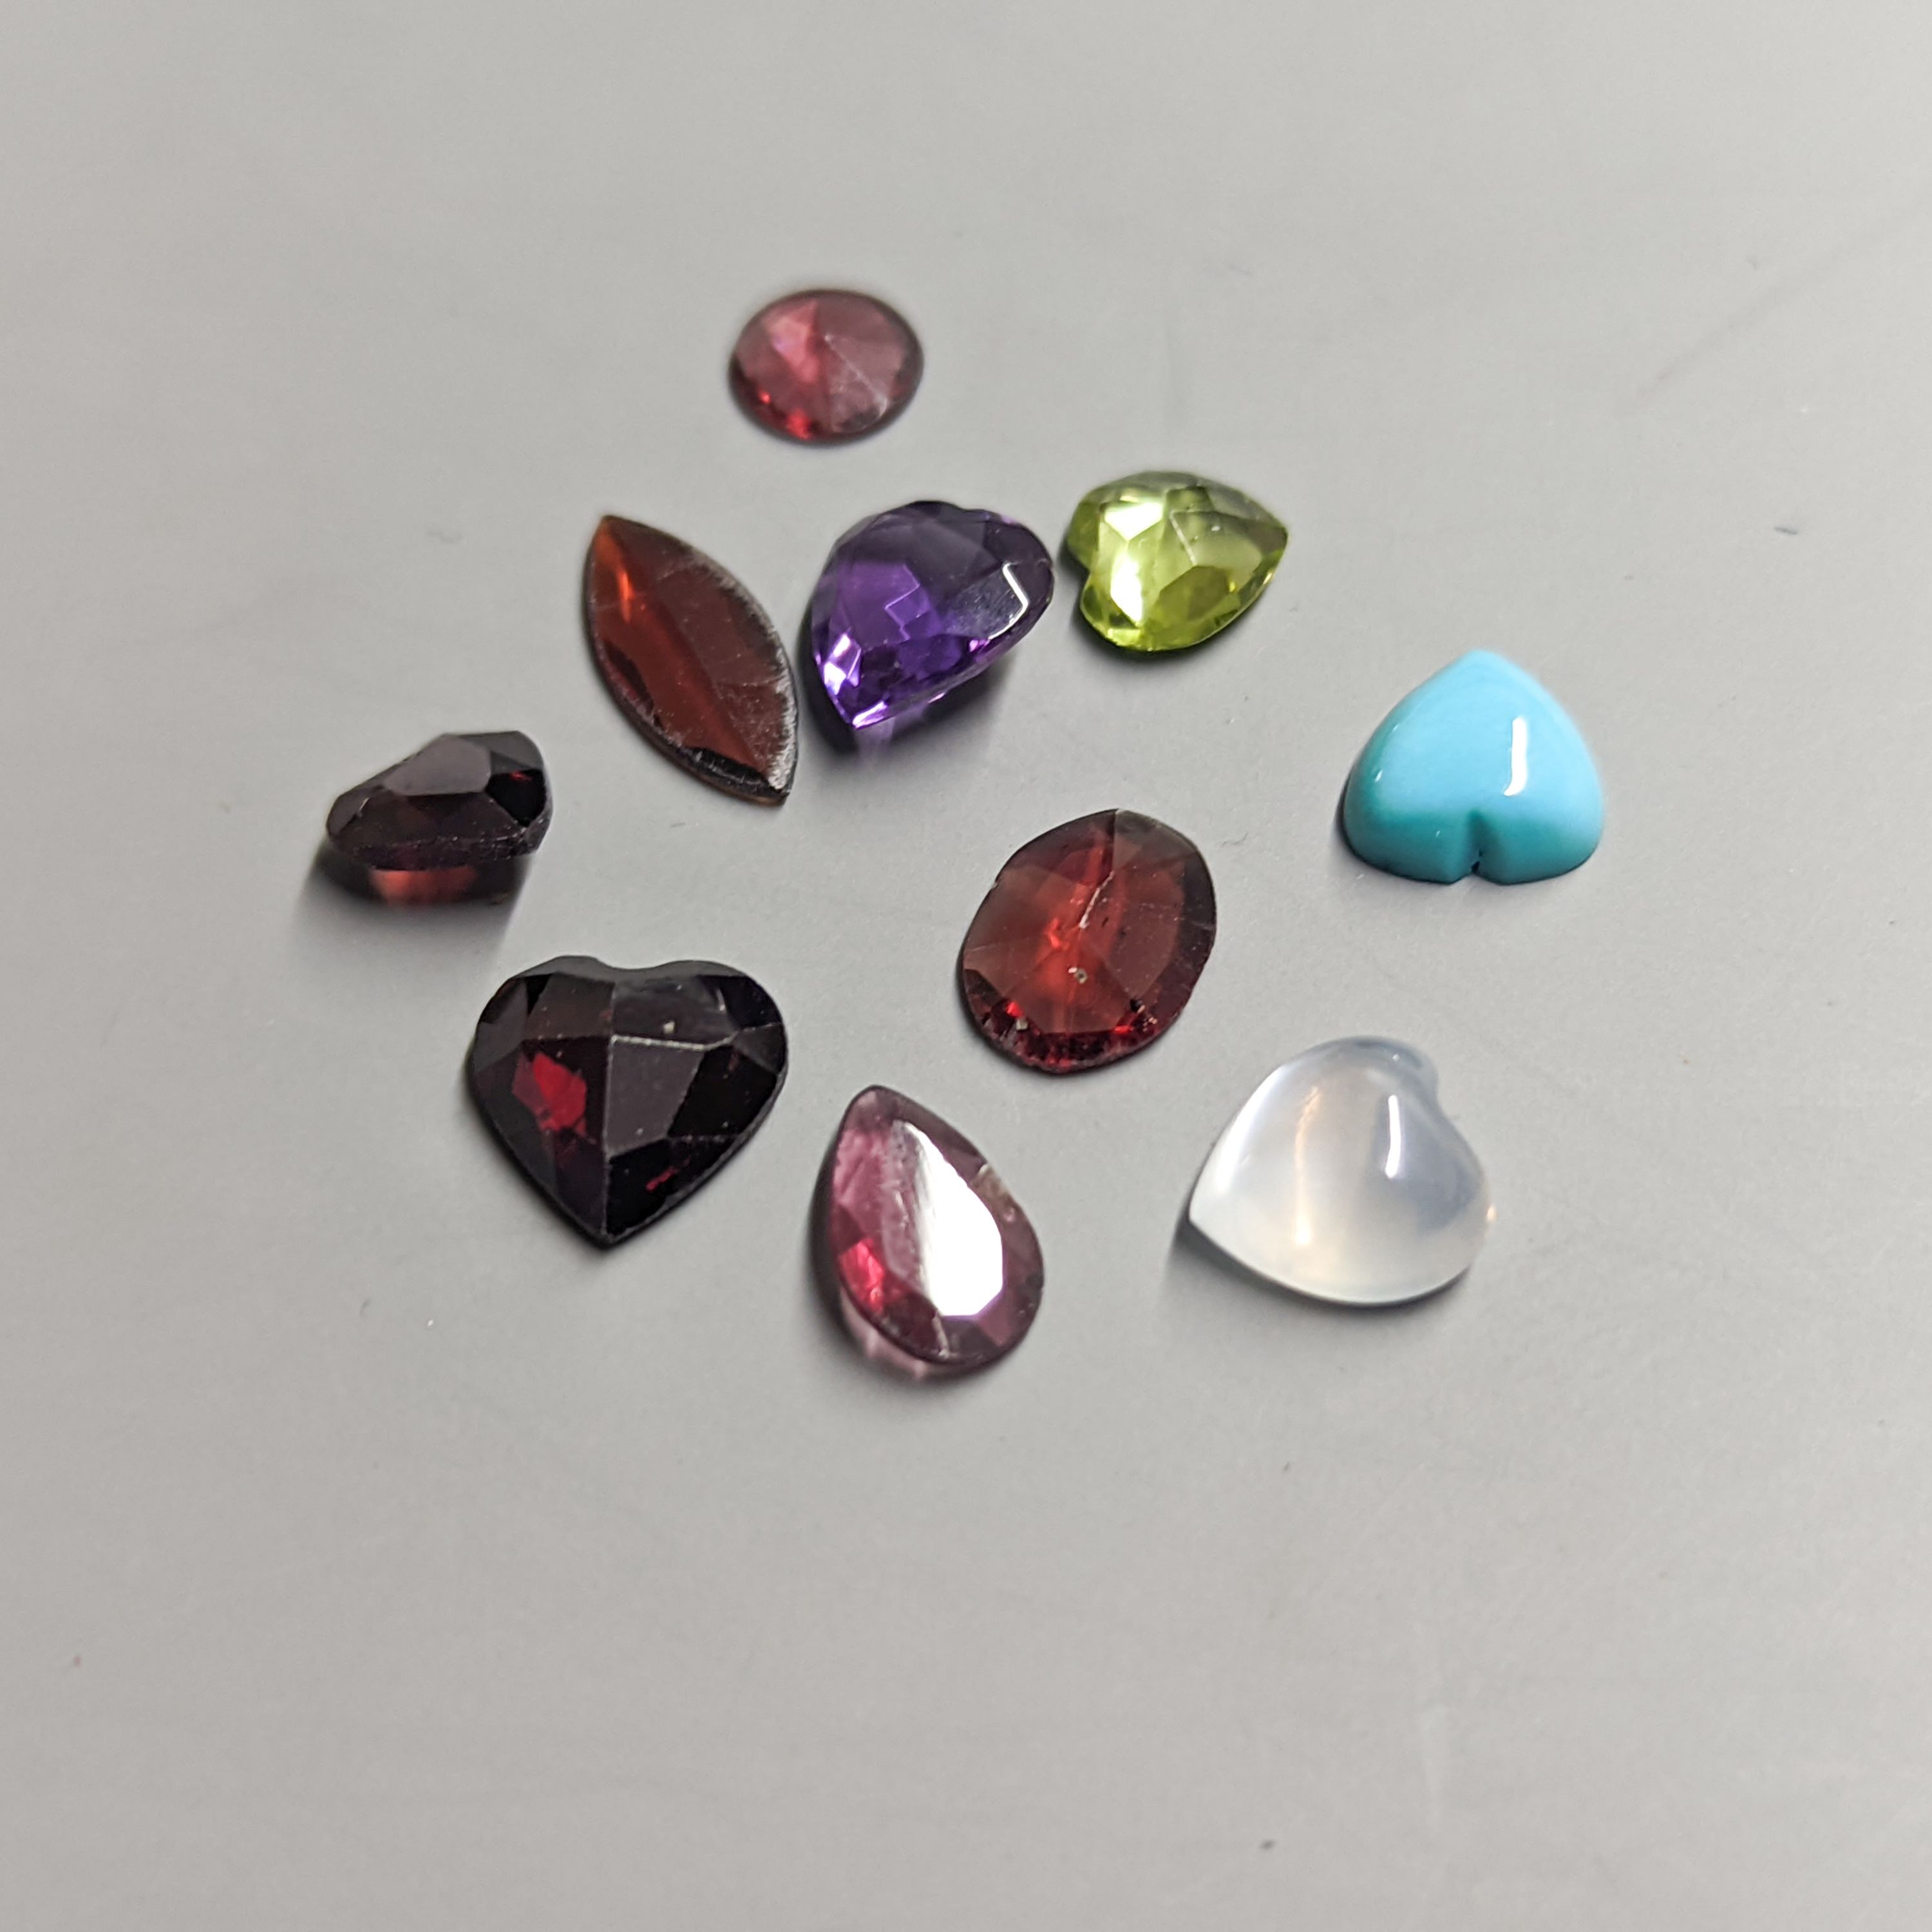 Nine assorted unmounted cut semi-precious gemstones including amethyst and garnet.